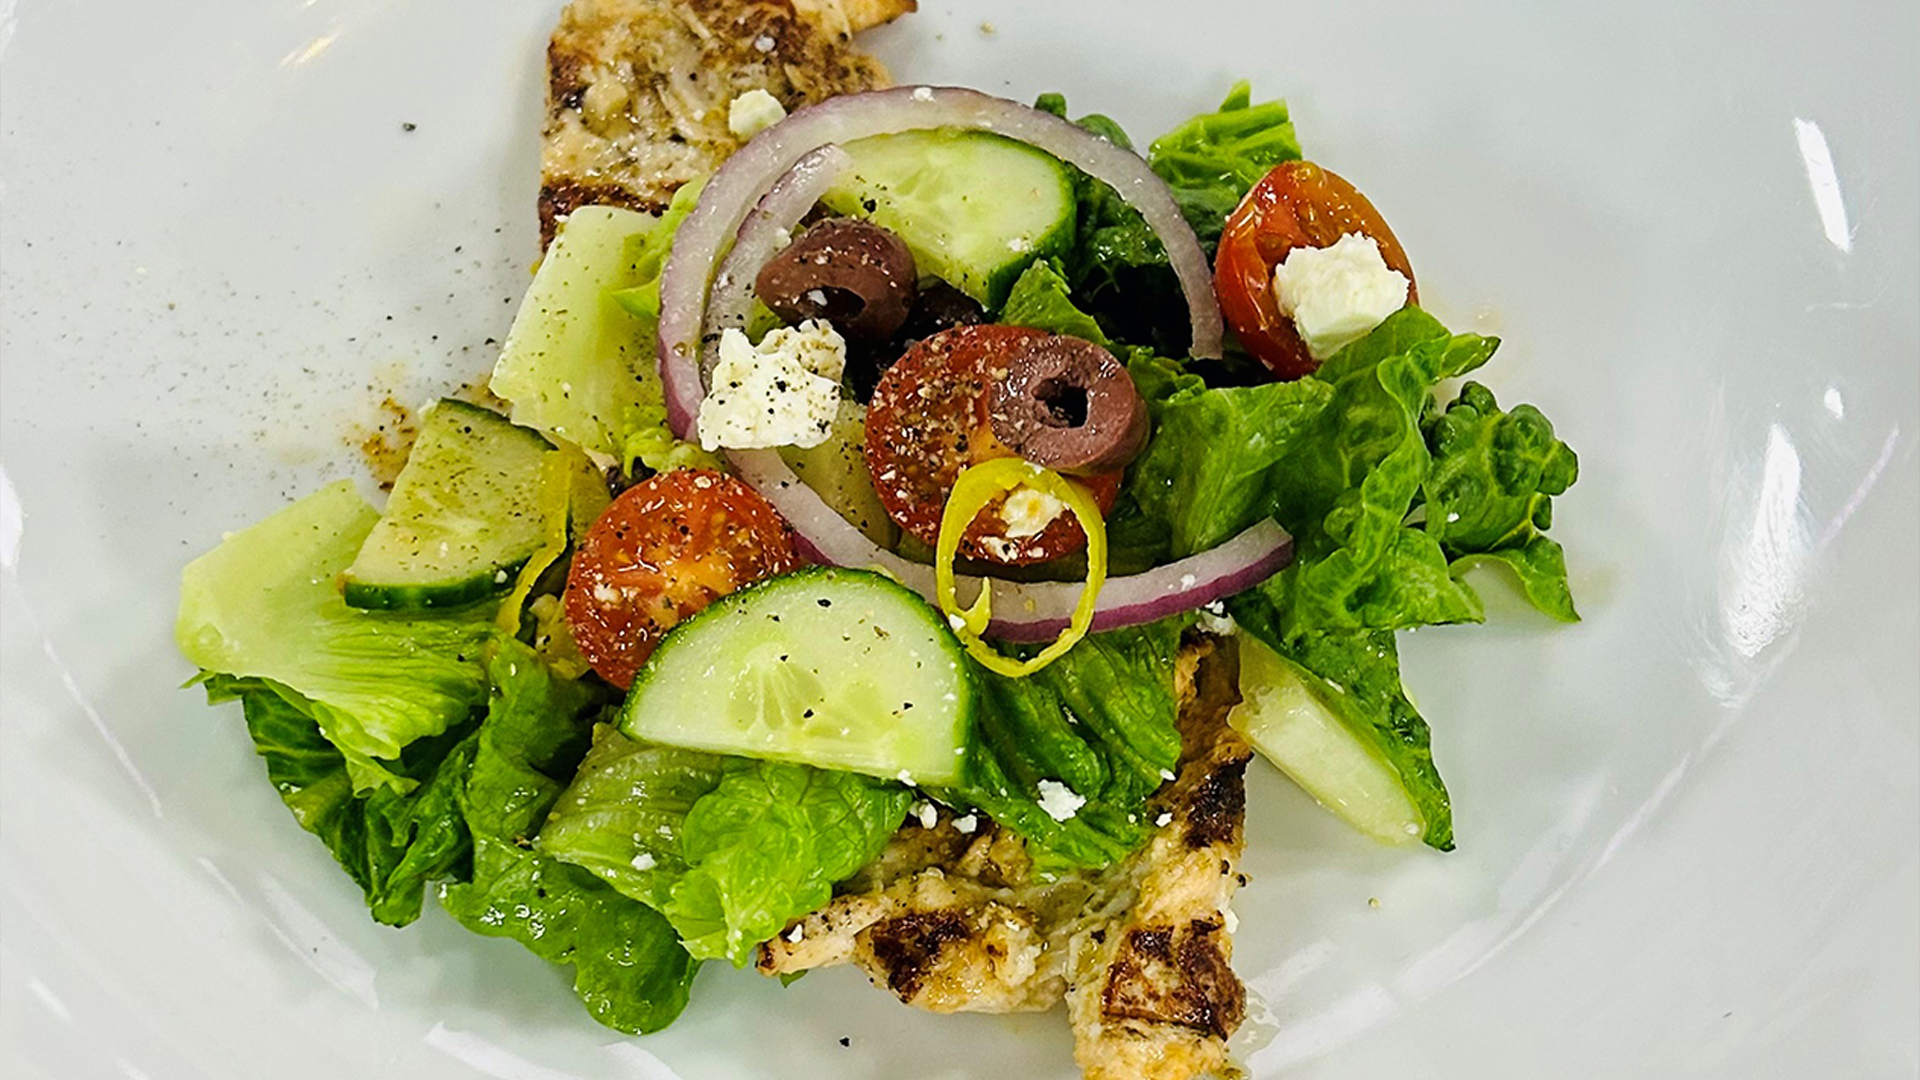 Grilled chicken paillard with Greek salad